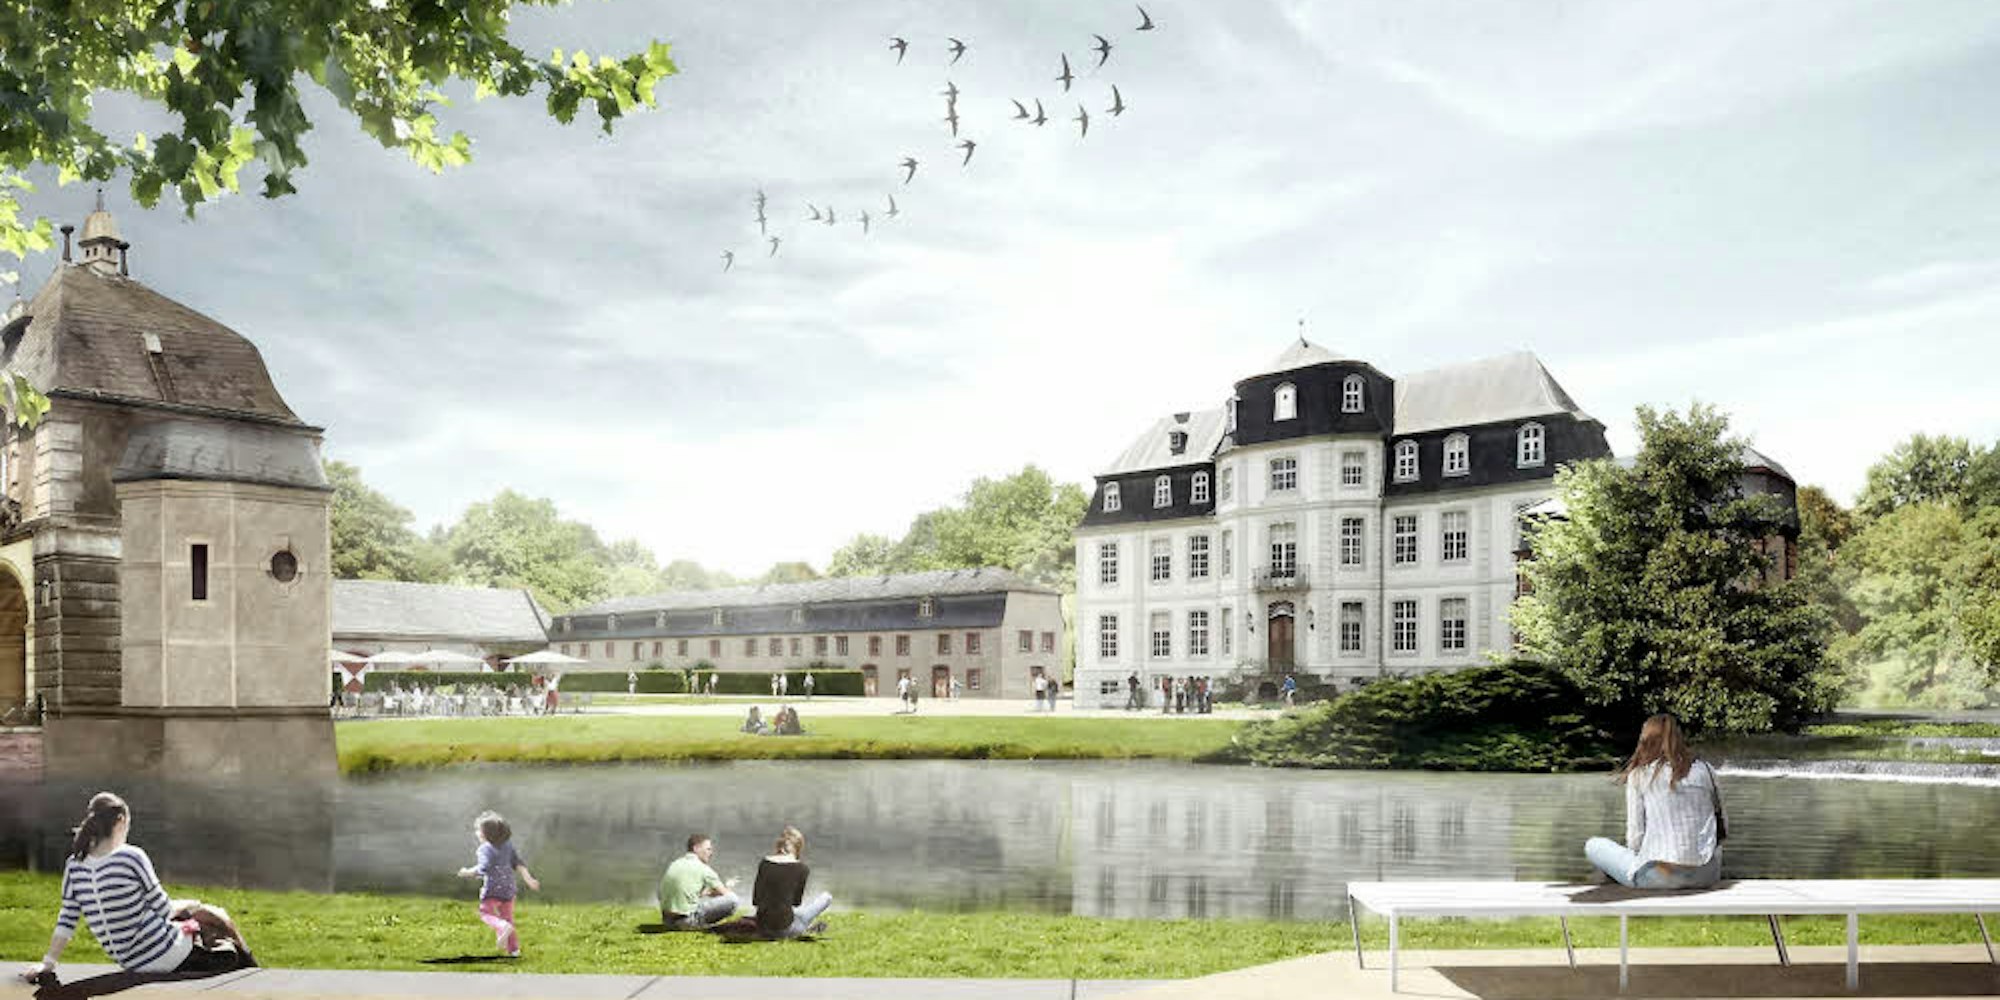 Im Rahmen des Förderprojekts „Zukunftsensemble Schloss Türnich“ soll die Wegeführung rund um das Gebäude grundlegend verbessert werden.